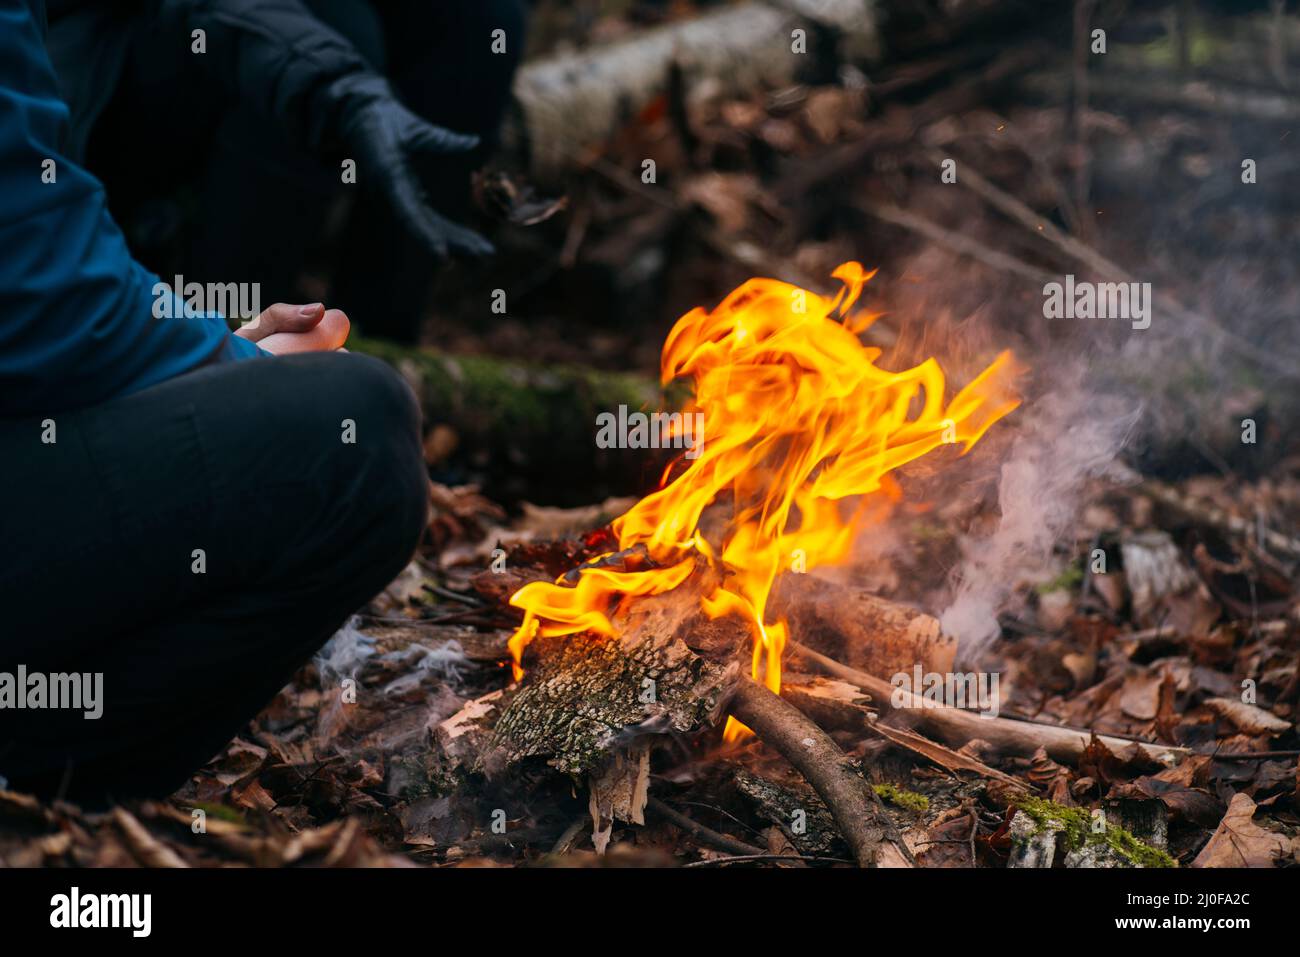 Der Mensch wärmt seine Hände auf Feuer. Brennendes Holz am Abend im Wald. Lagerfeuer im touristischen Camp in der Natur. Grill und Kochen o Stockfoto